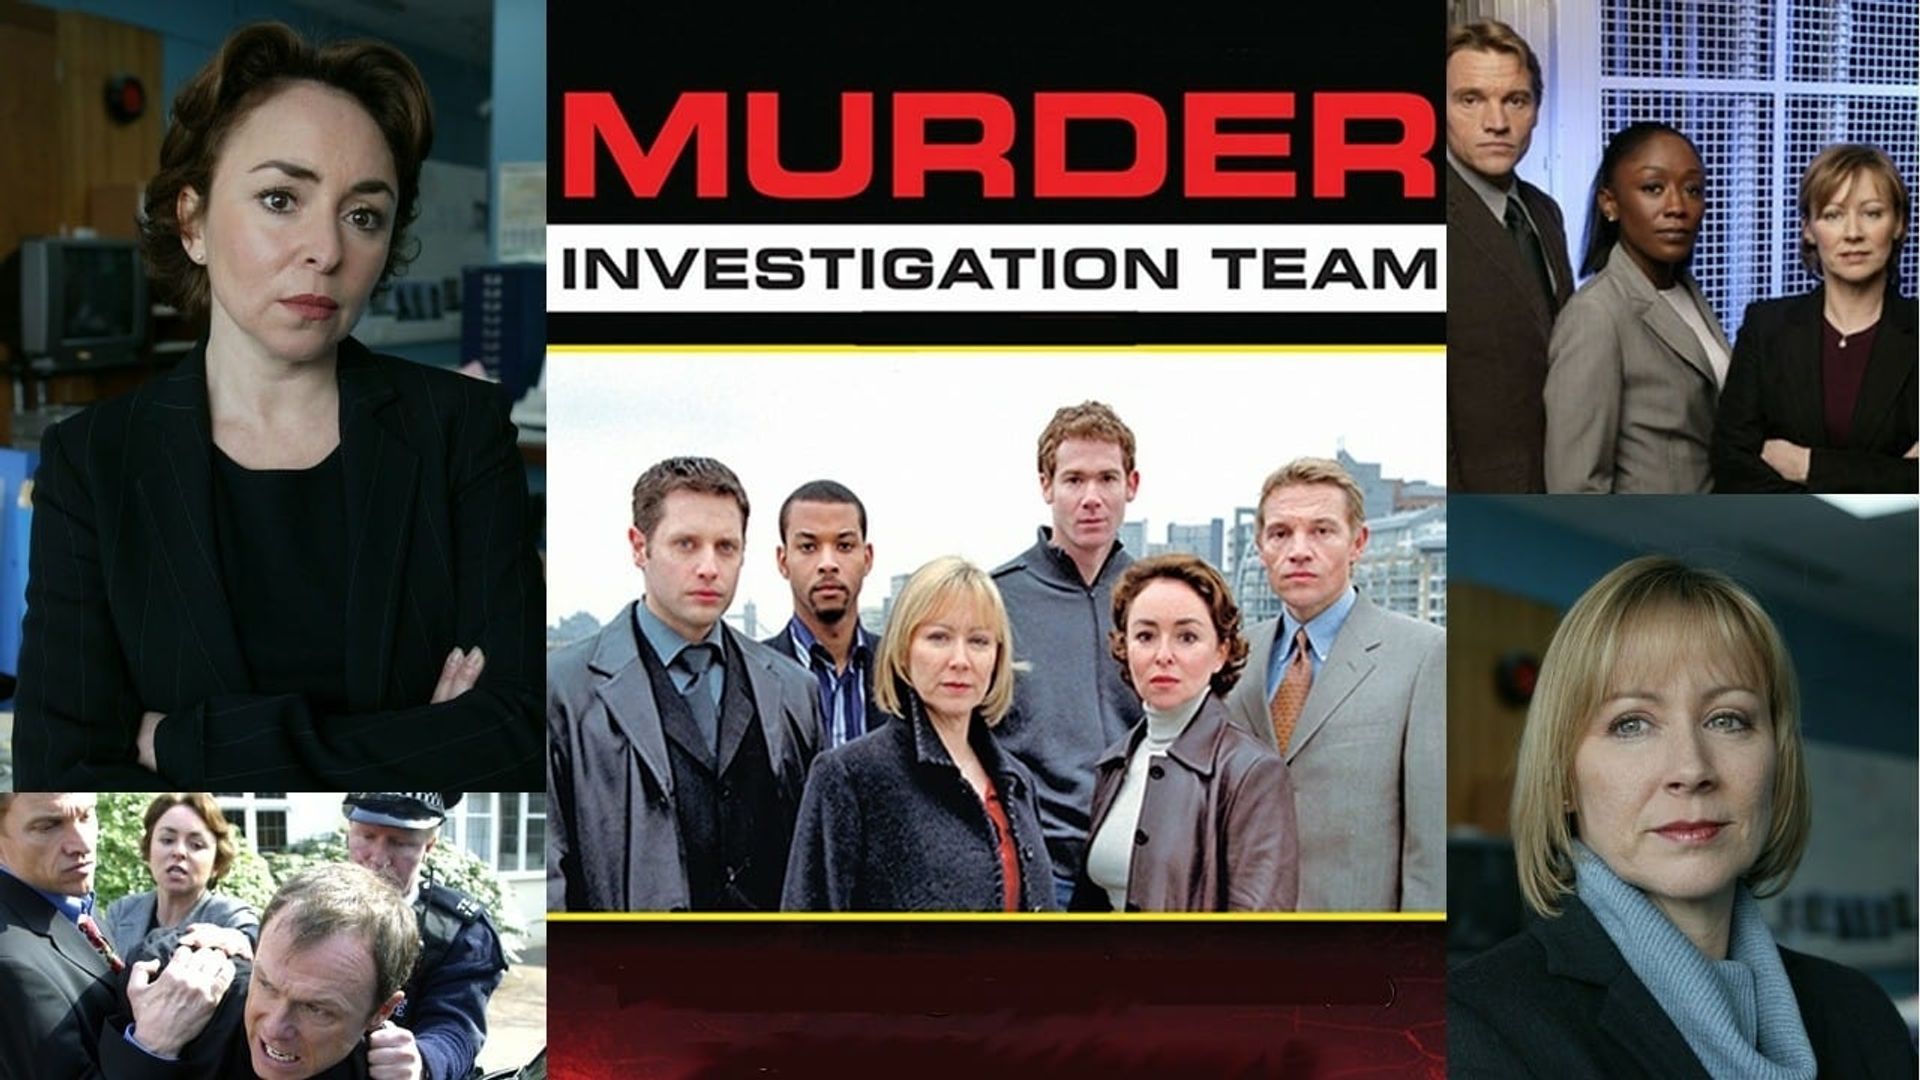 M.I.T.: Murder Investigation Team background